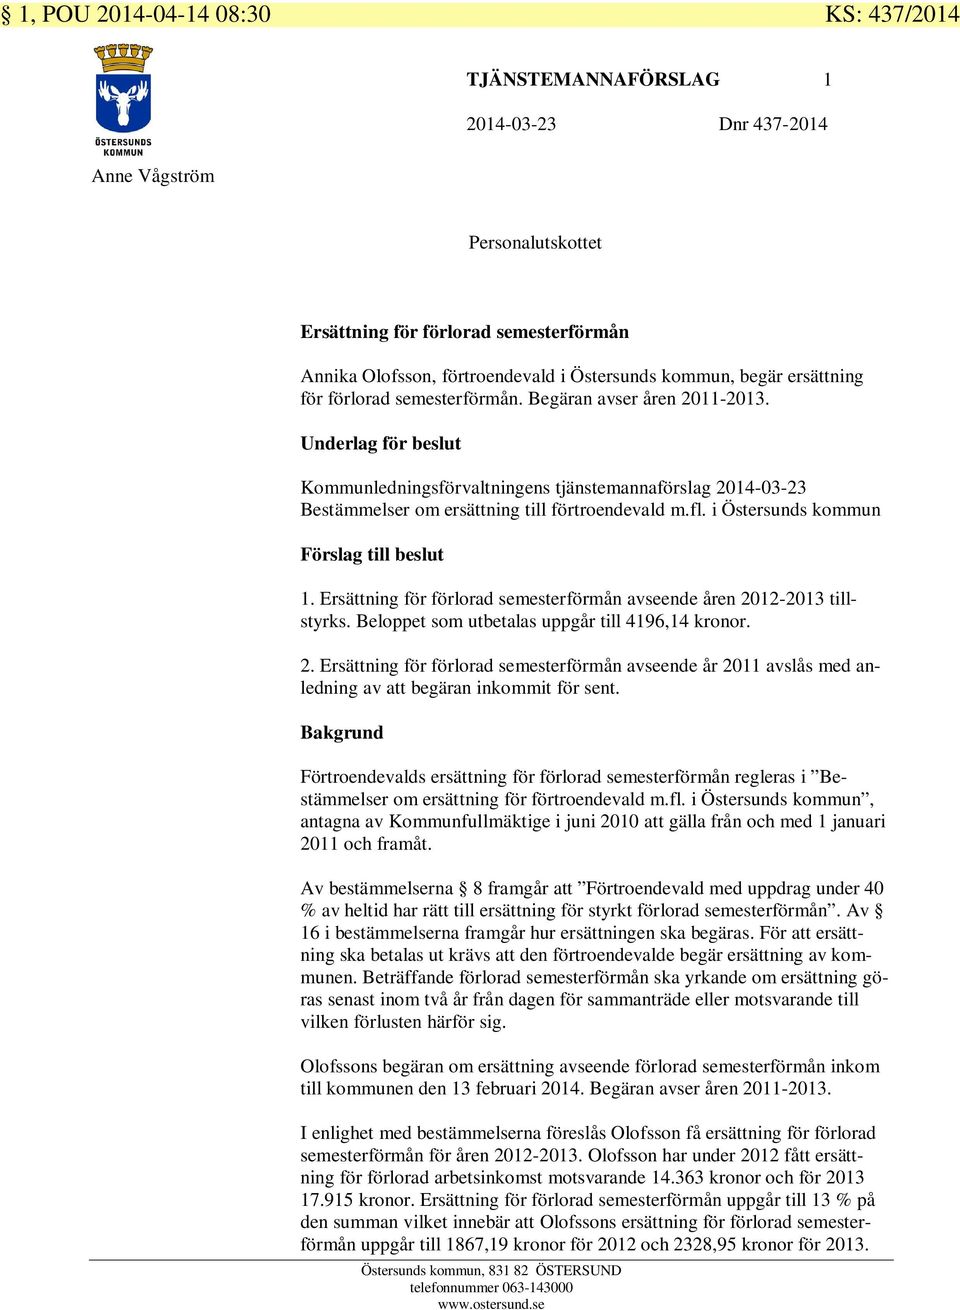 Underlag för beslut Kommunledningsförvaltningens tjänstemannaförslag 2014-03-23 Bestämmelser om ersättning till förtroendevald m.fl. i Östersunds kommun Förslag till beslut 1.